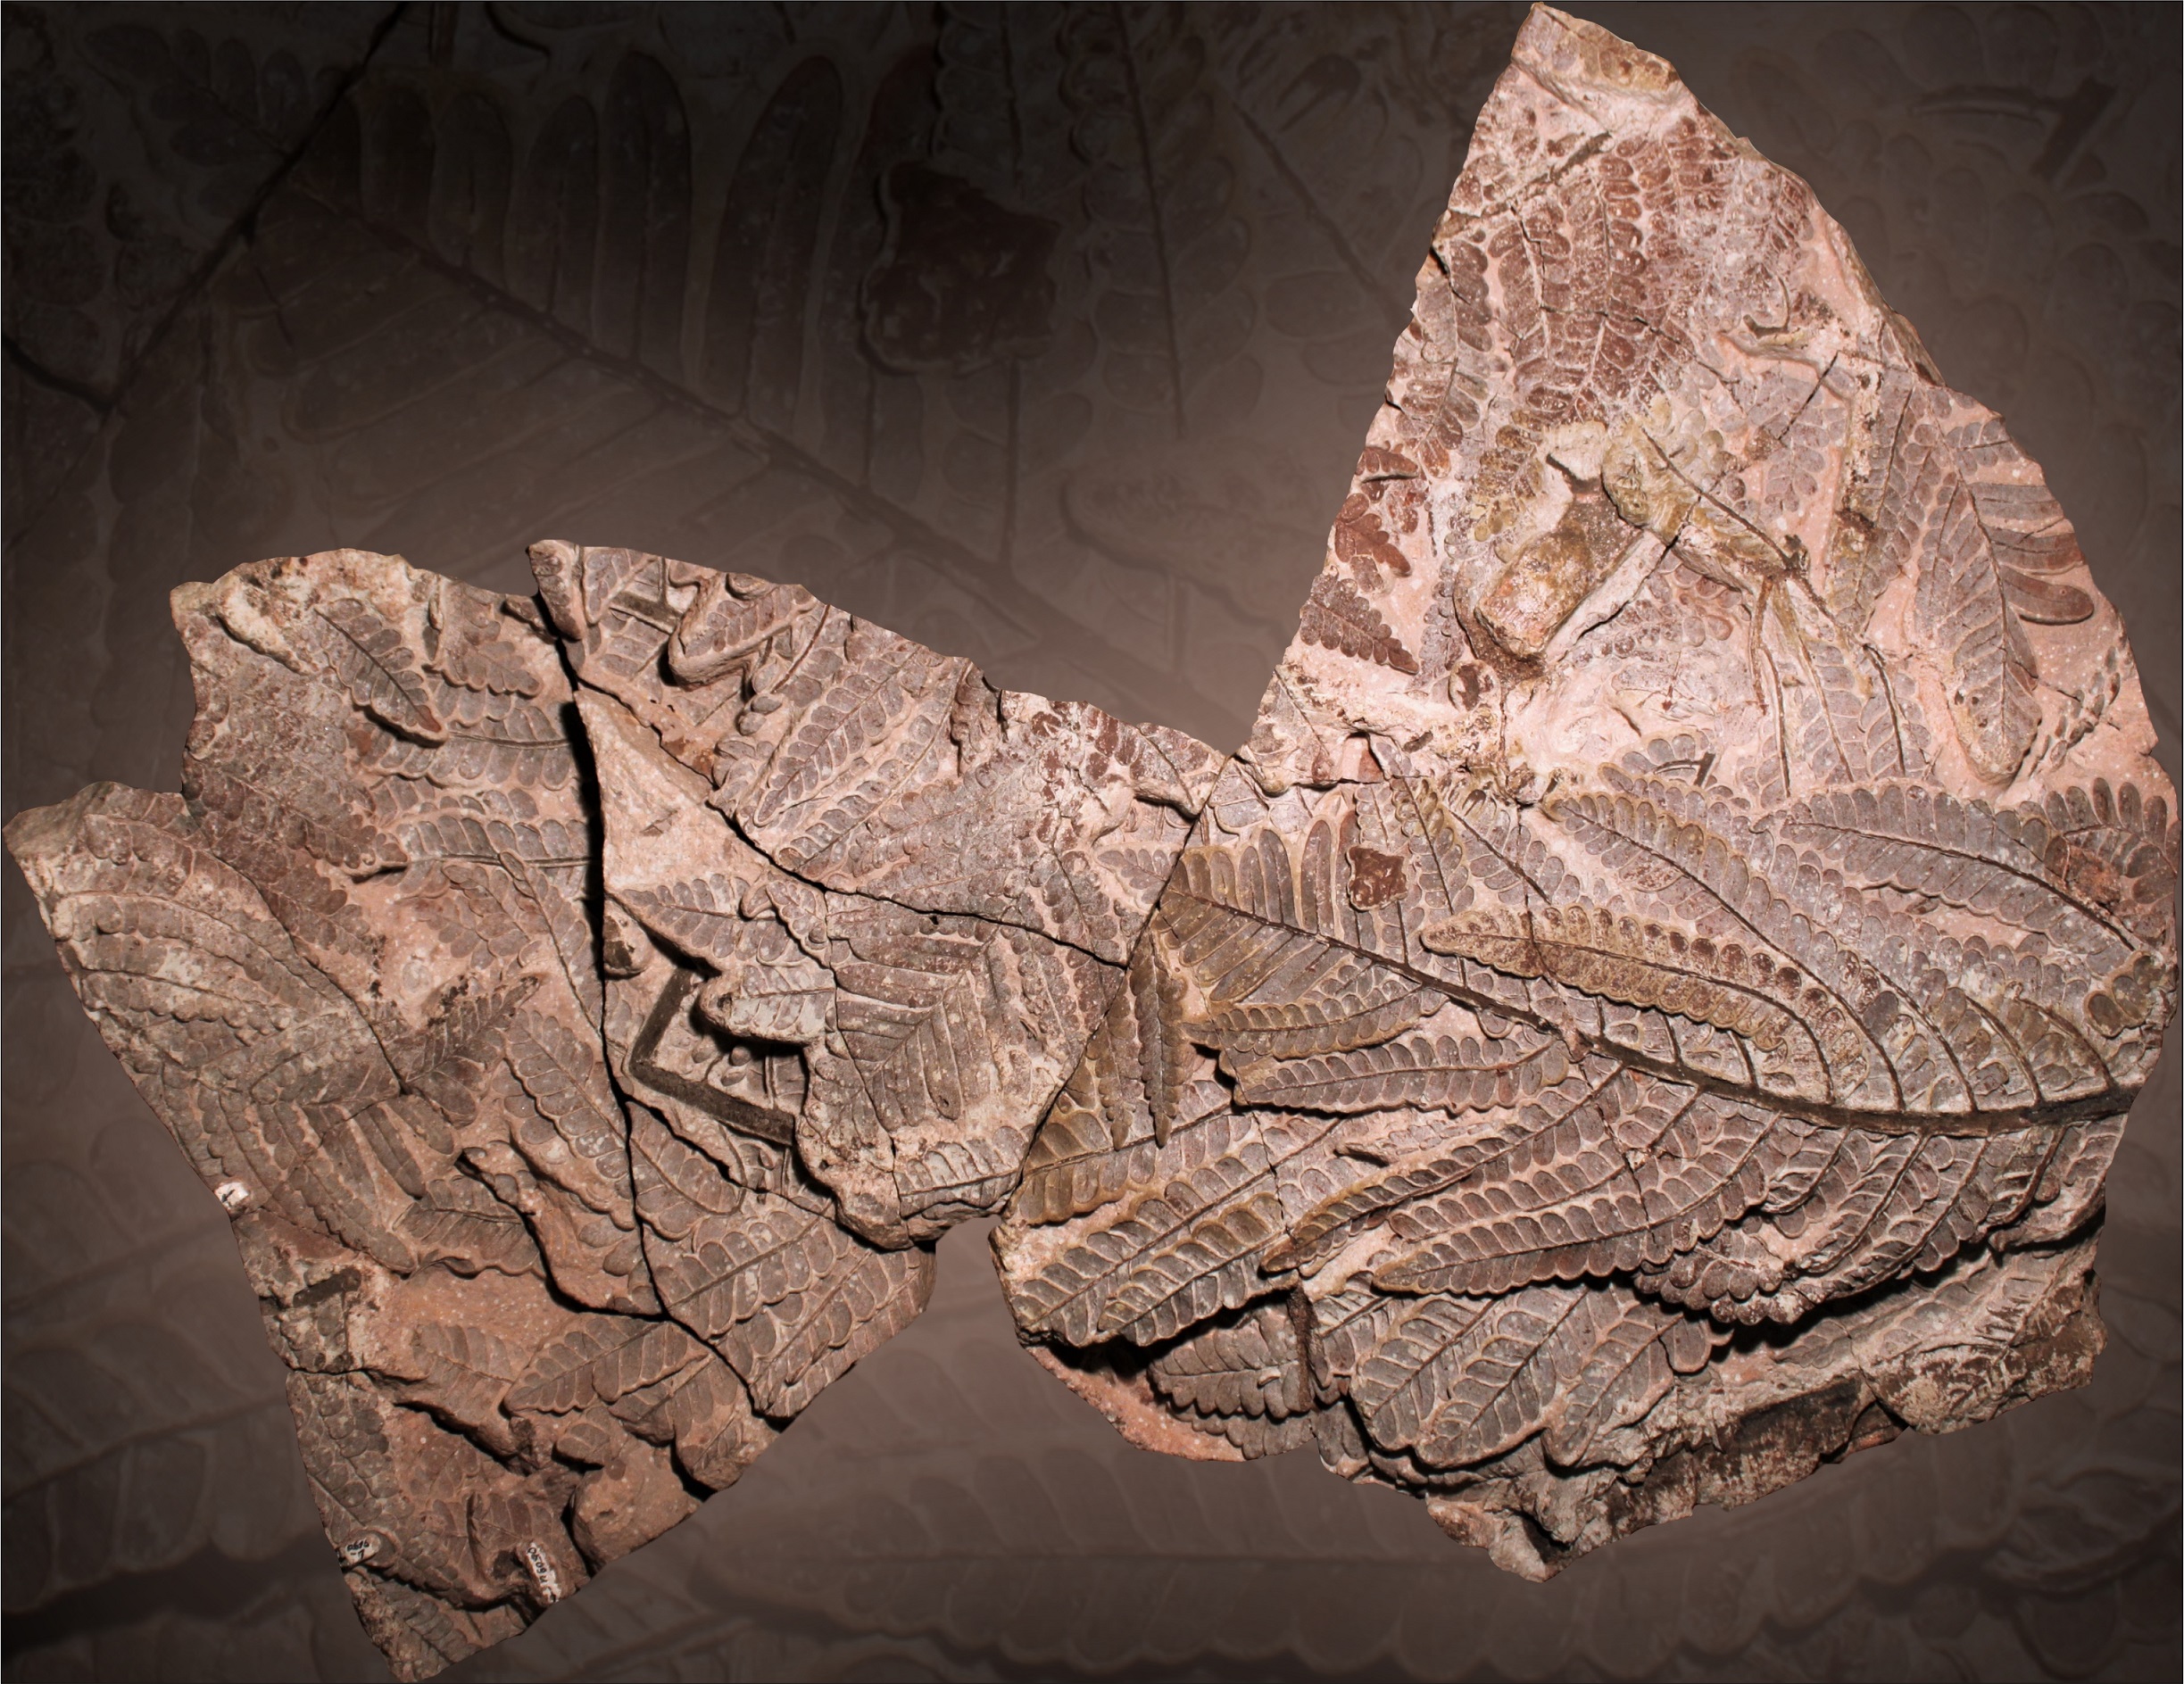  Bei der Präparation des Fossilfundes bewies Evgeny Fridland enorme Geduld und Fingerspitzengefühl 